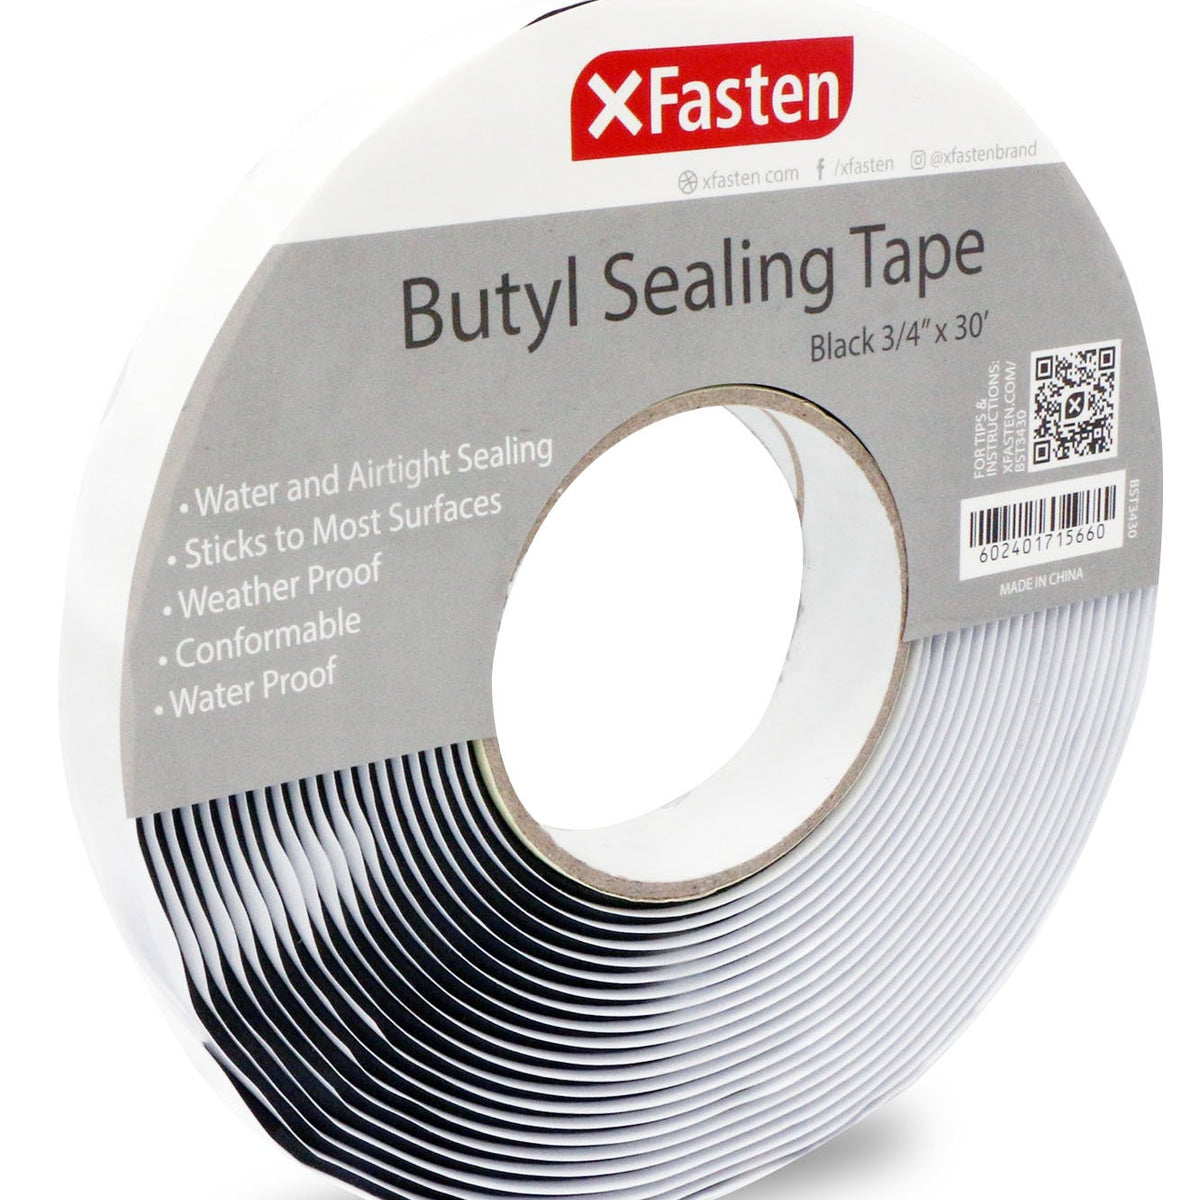 Buy XFasten Butyl Sealing Tape, Black, 1/8-In x 3/4-In x 30-Foot